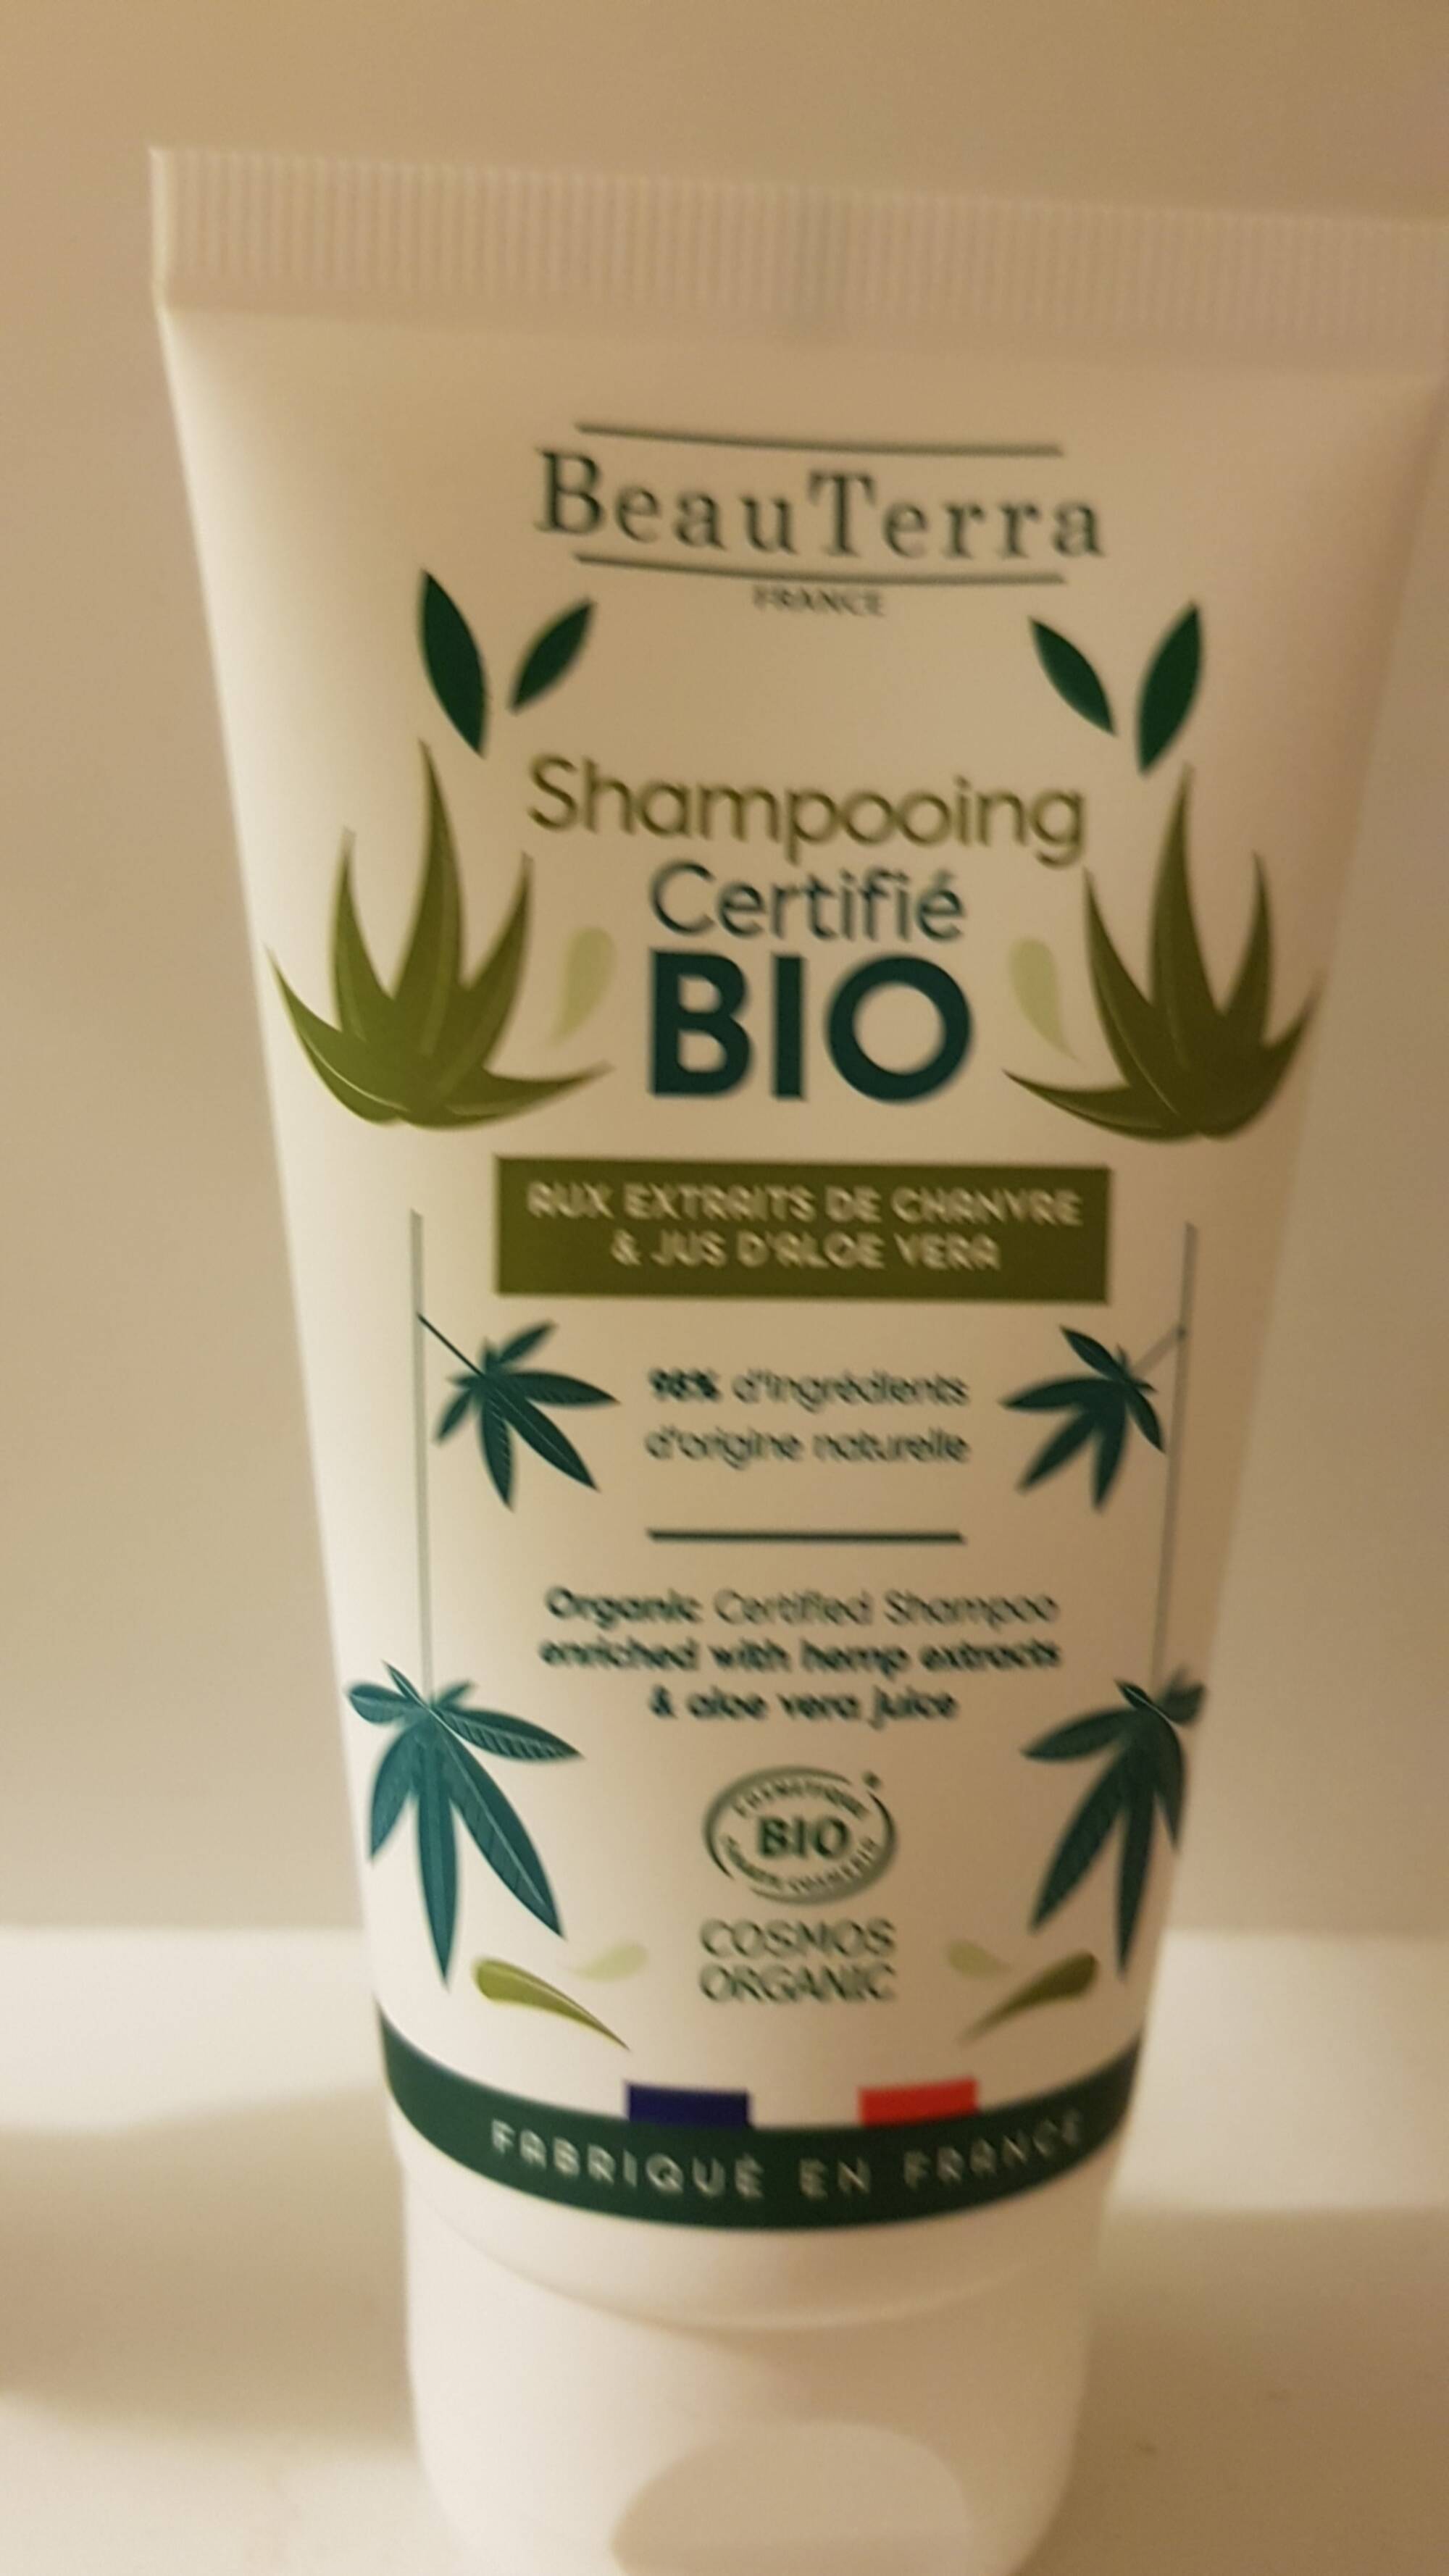 BEAUTERRA - Shampooing aux extraits de Chanvre & Jus d'Aloe vera